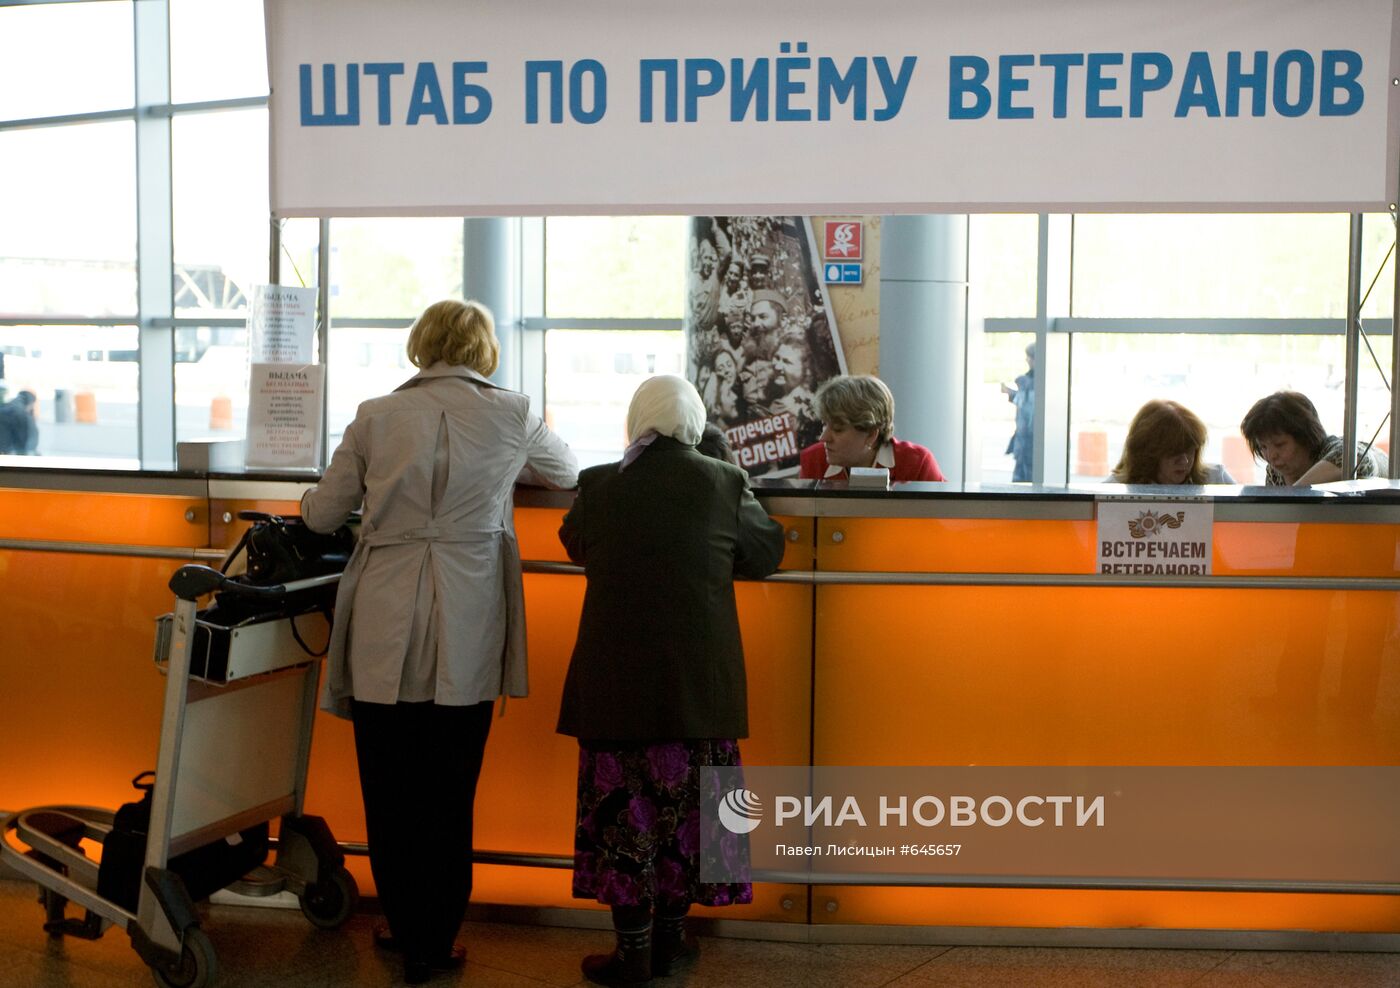 Встреча ветеранов ВОВ в аэропорту "Домодедово"